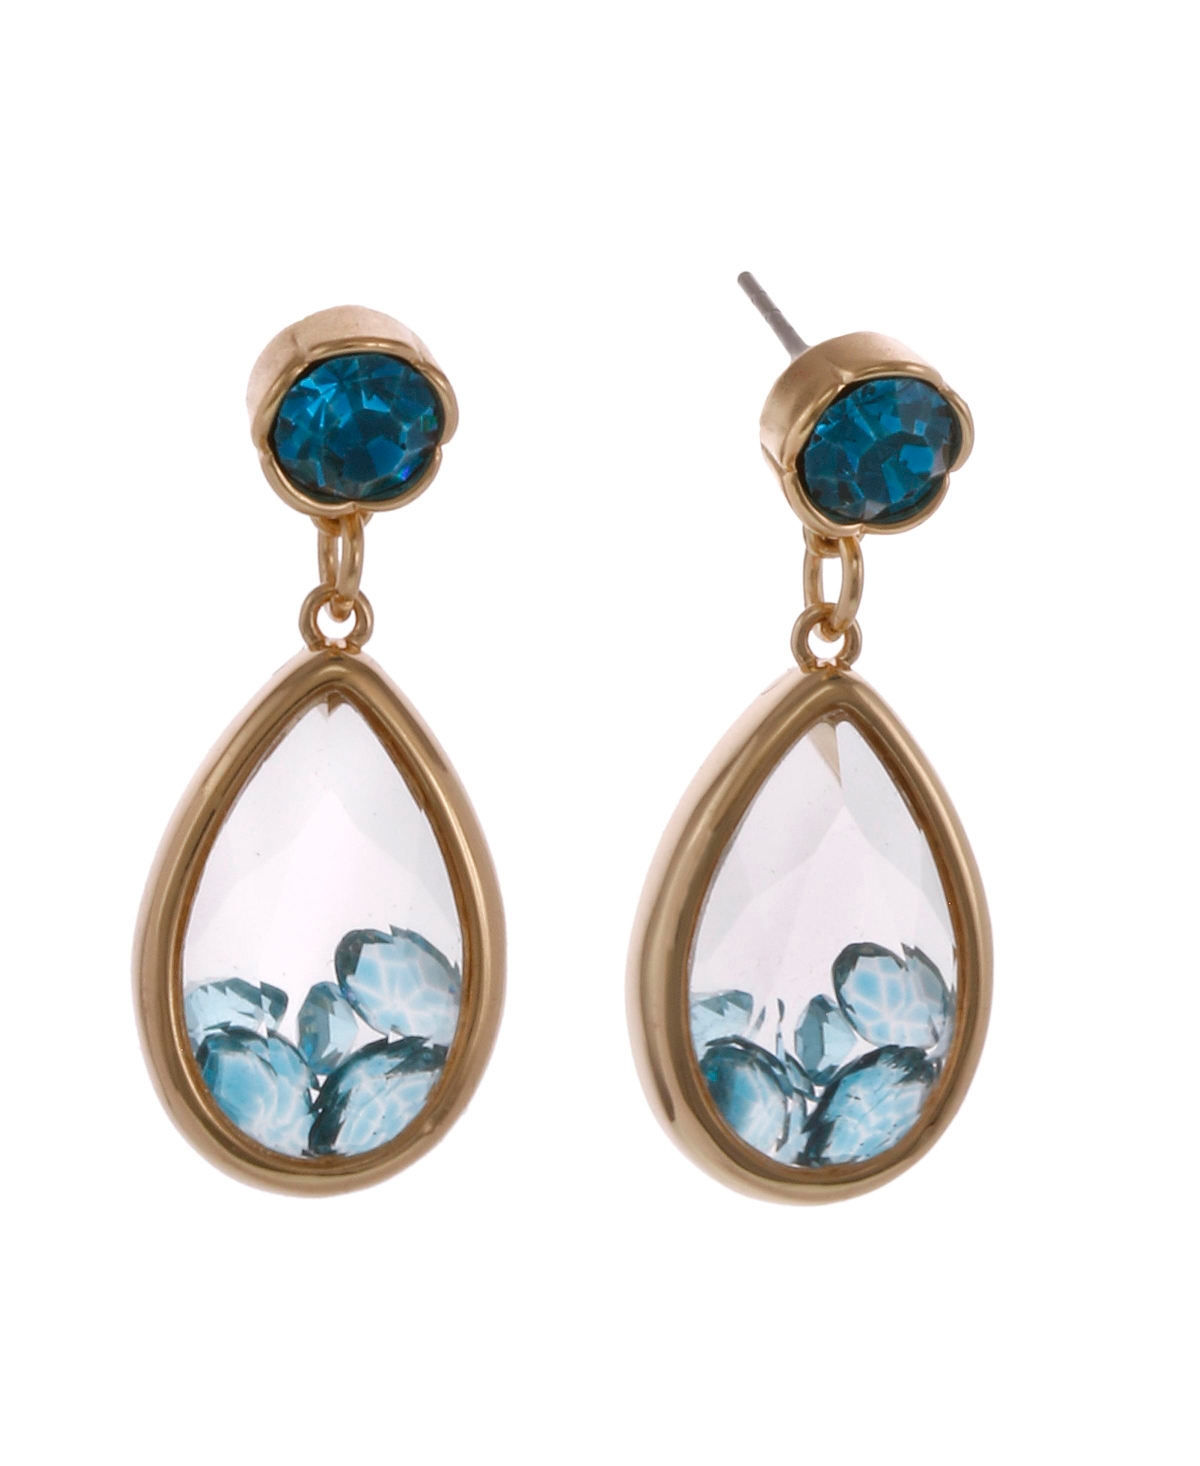 Stone Teardrop Earrings - Turquoise